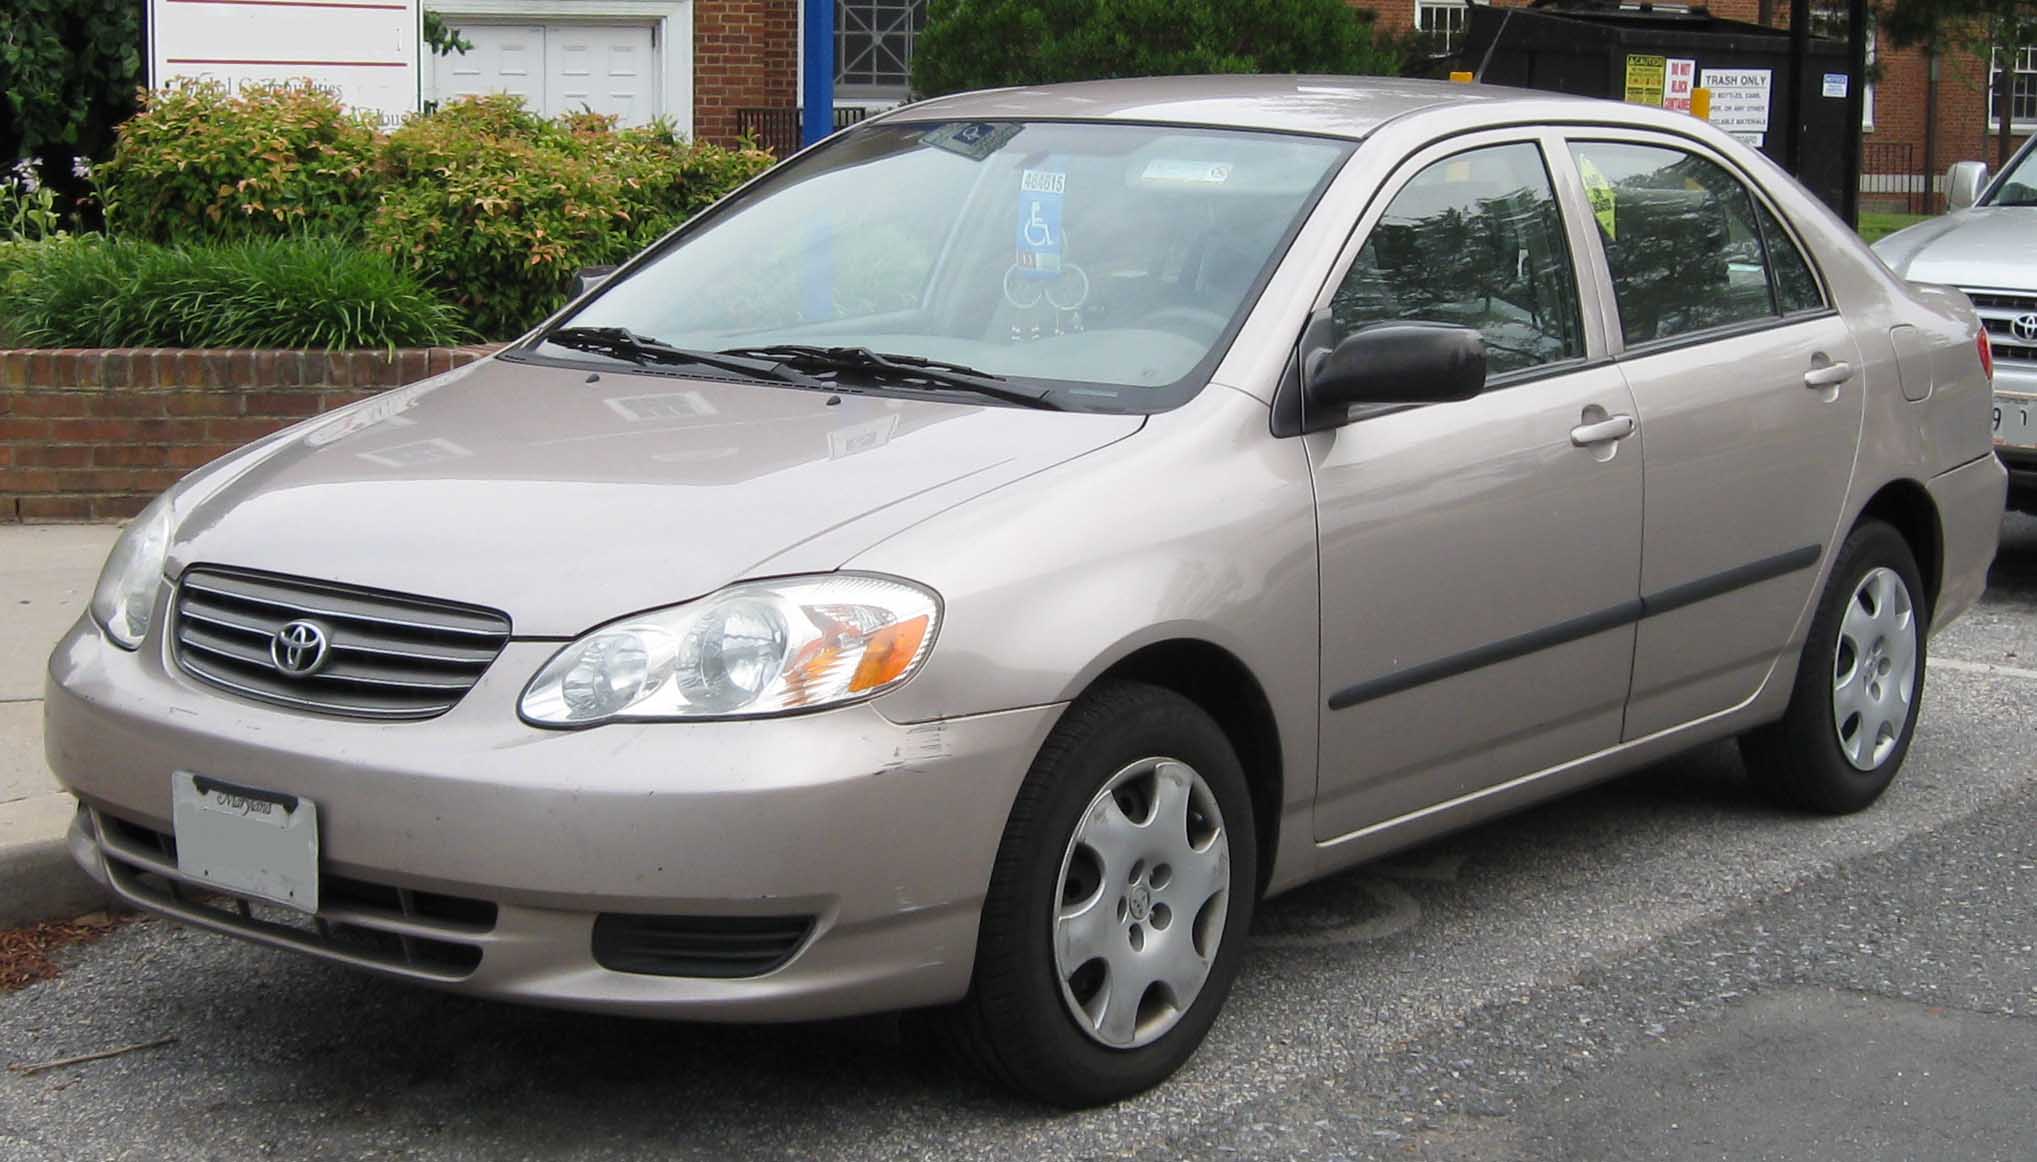 2003 Corolla #2